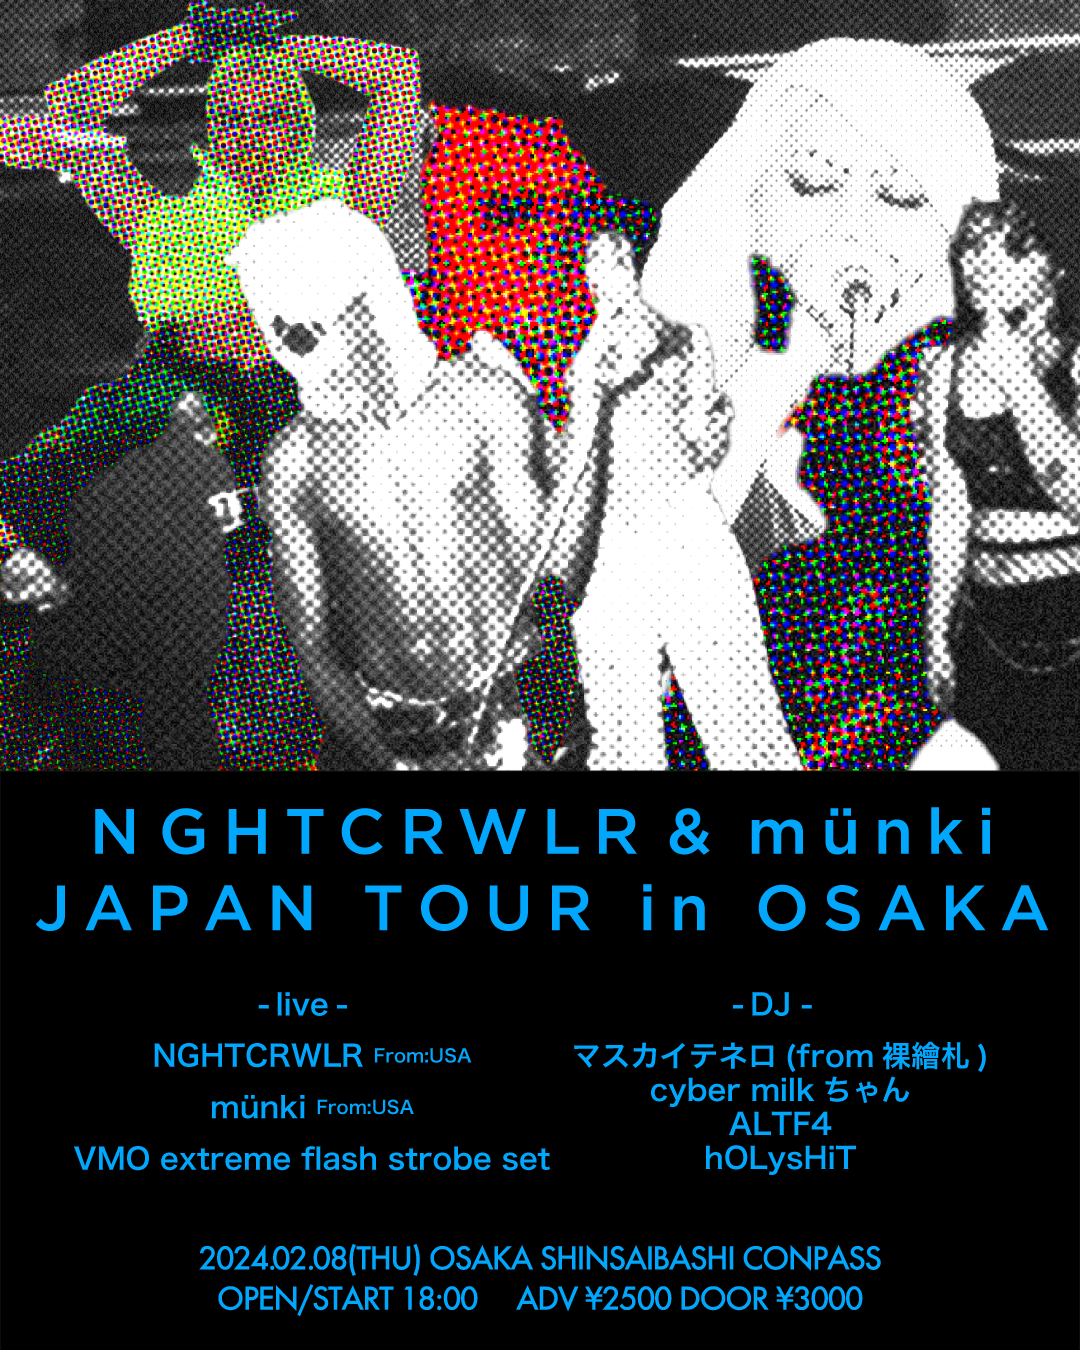 NGHTCRWLR & münki JAPAN TOUR in OSAKA - フライヤー表